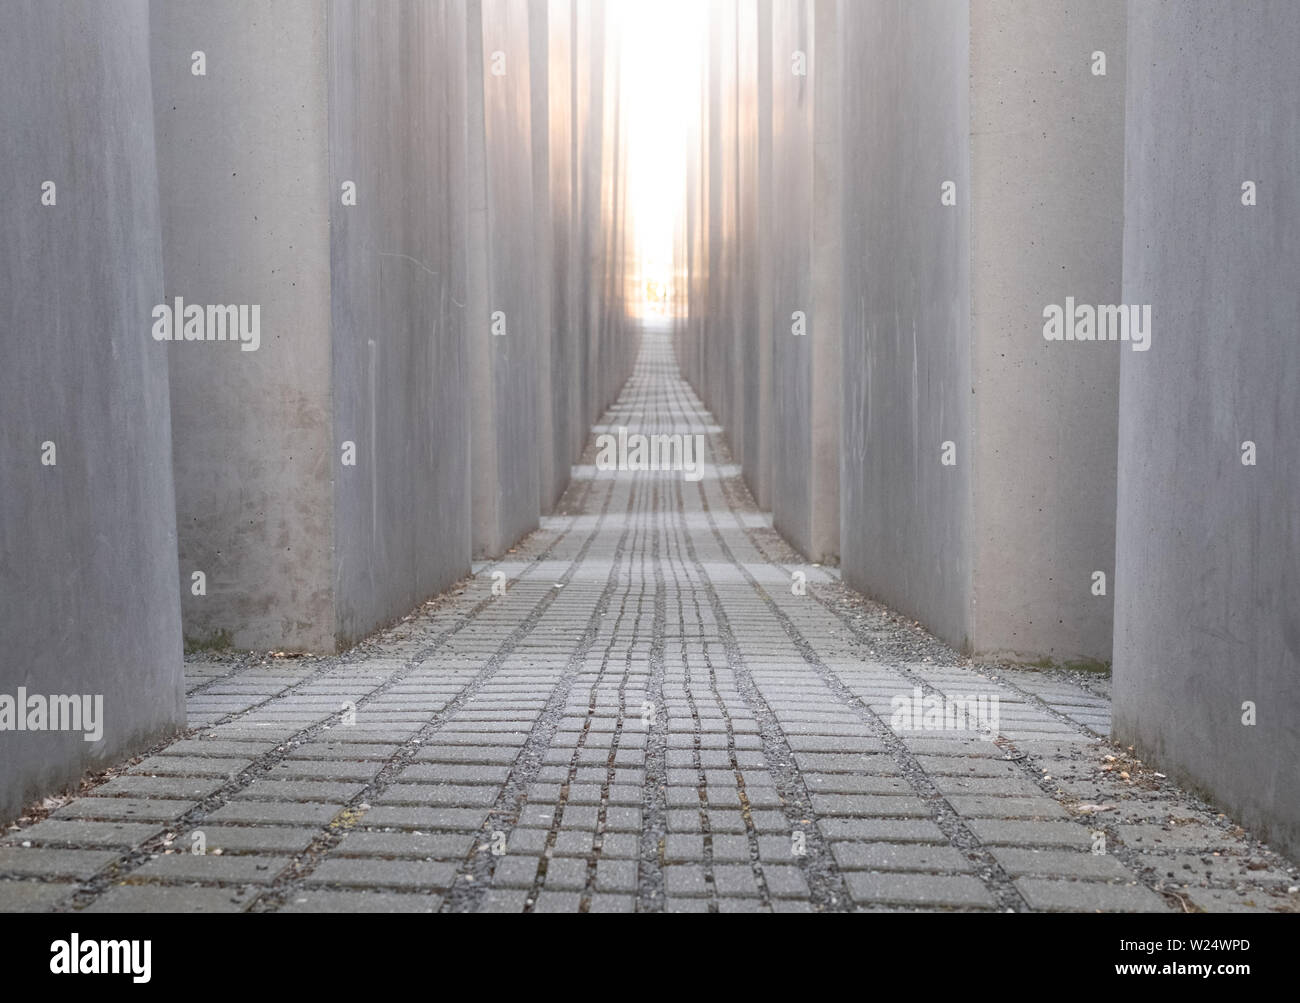 Betonplatten am Denkmal für die ermordeten Juden Europas von Peter Eisenman. Das Denkmal ist in der späten Nachmittagssonne fotografiert. Stockfoto